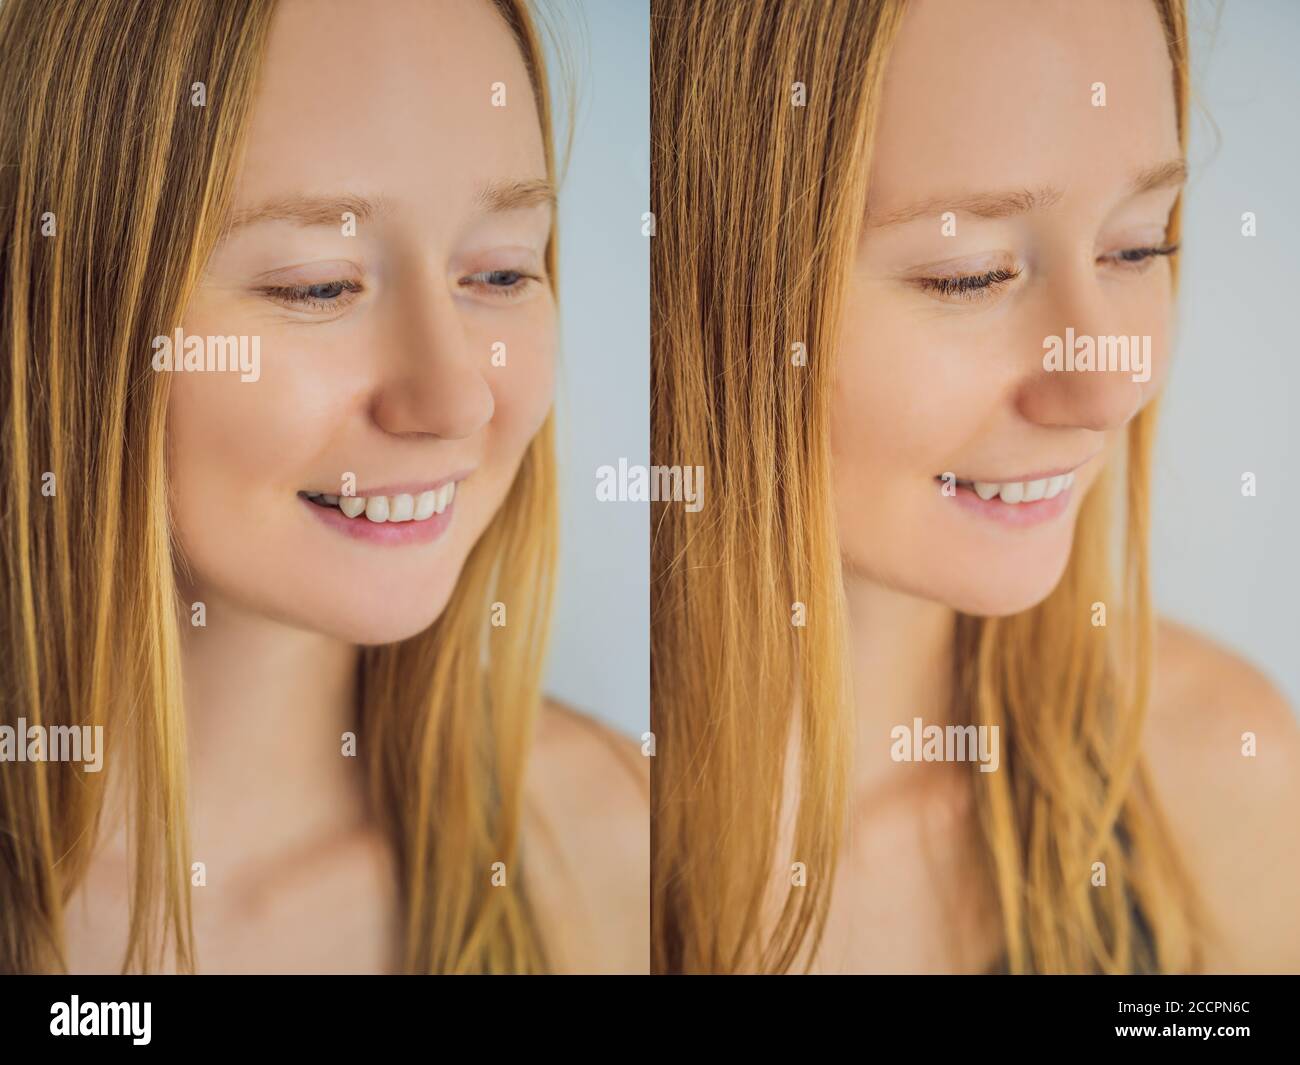 Confronto di occhi femmina prima e dopo extension delle ciglia Foto Stock